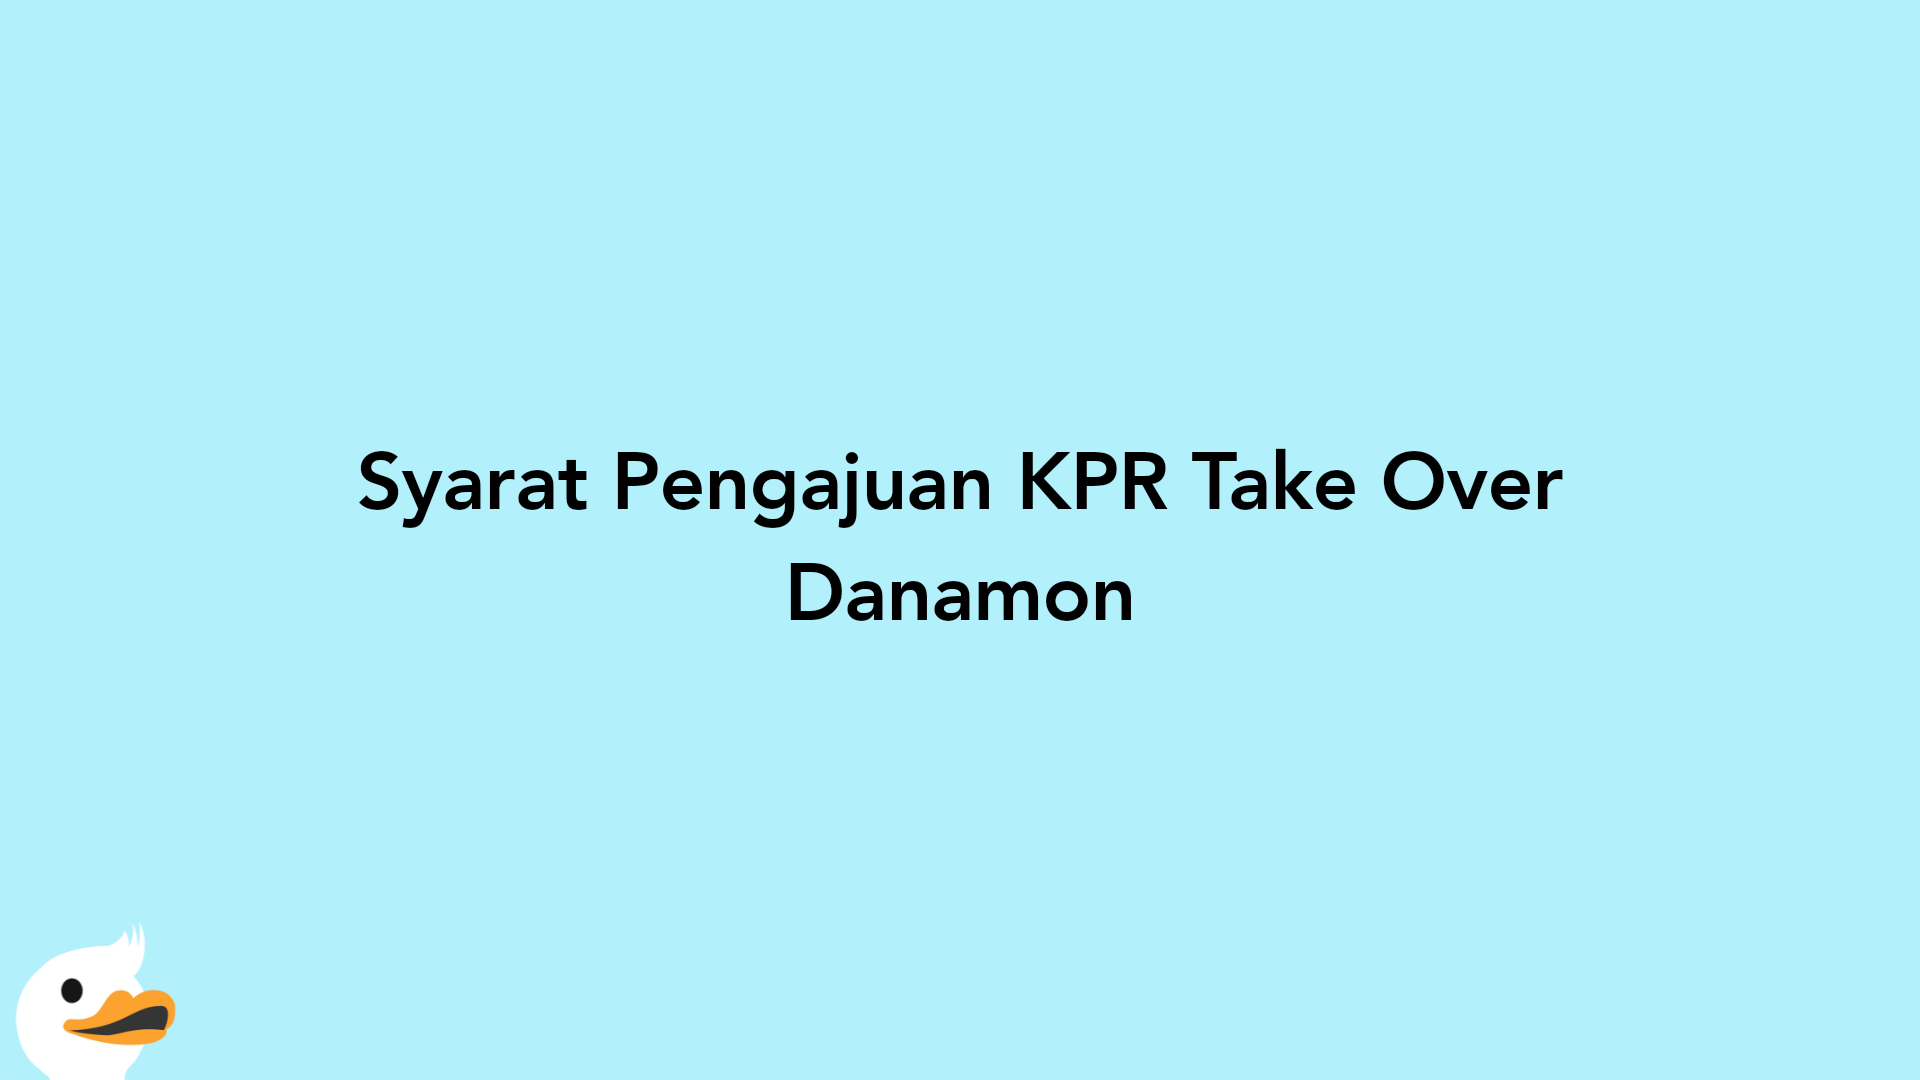 Syarat Pengajuan KPR Take Over Danamon